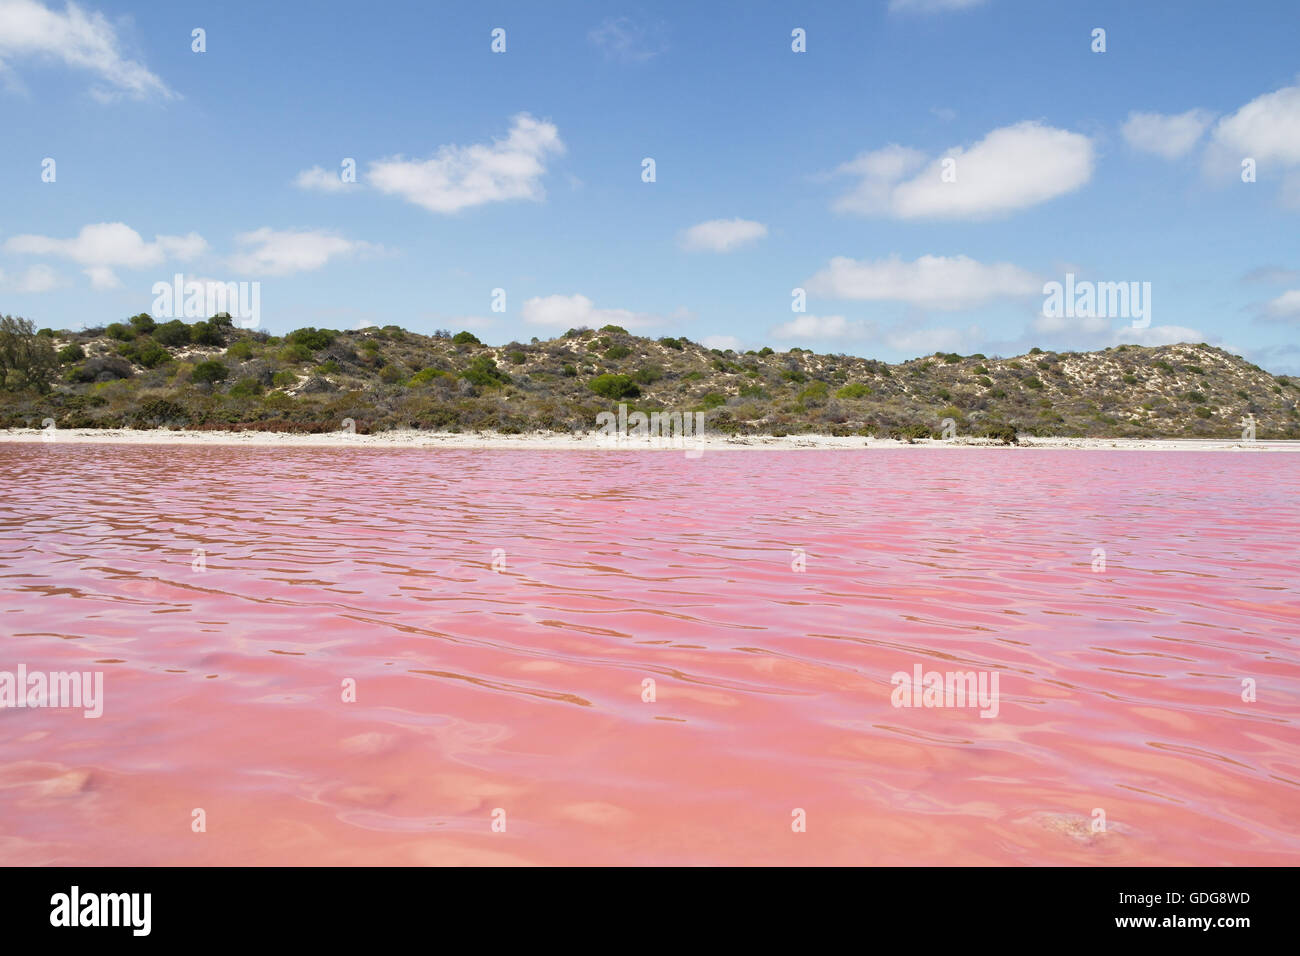 Pink Lake in der Nähe von Port Gregory in Western Australia - Australien Stockfoto